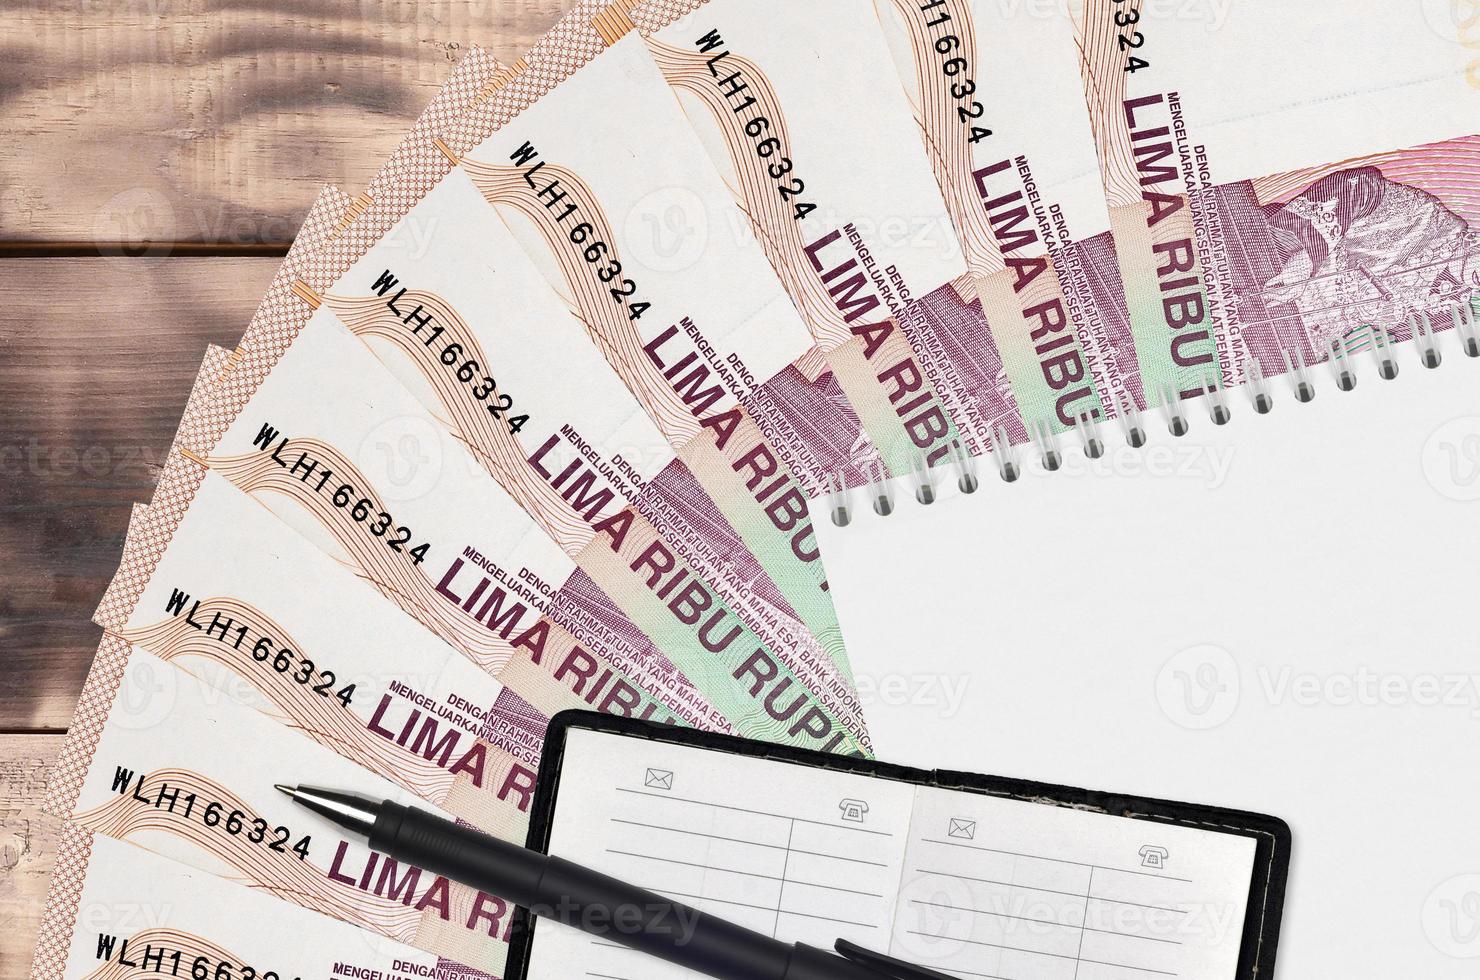 Ventilador de billetes de 5000 rupias indonesias y bloc de notas con libreta de contactos y bolígrafo negro. concepto de planificación financiera y estrategia empresarial foto